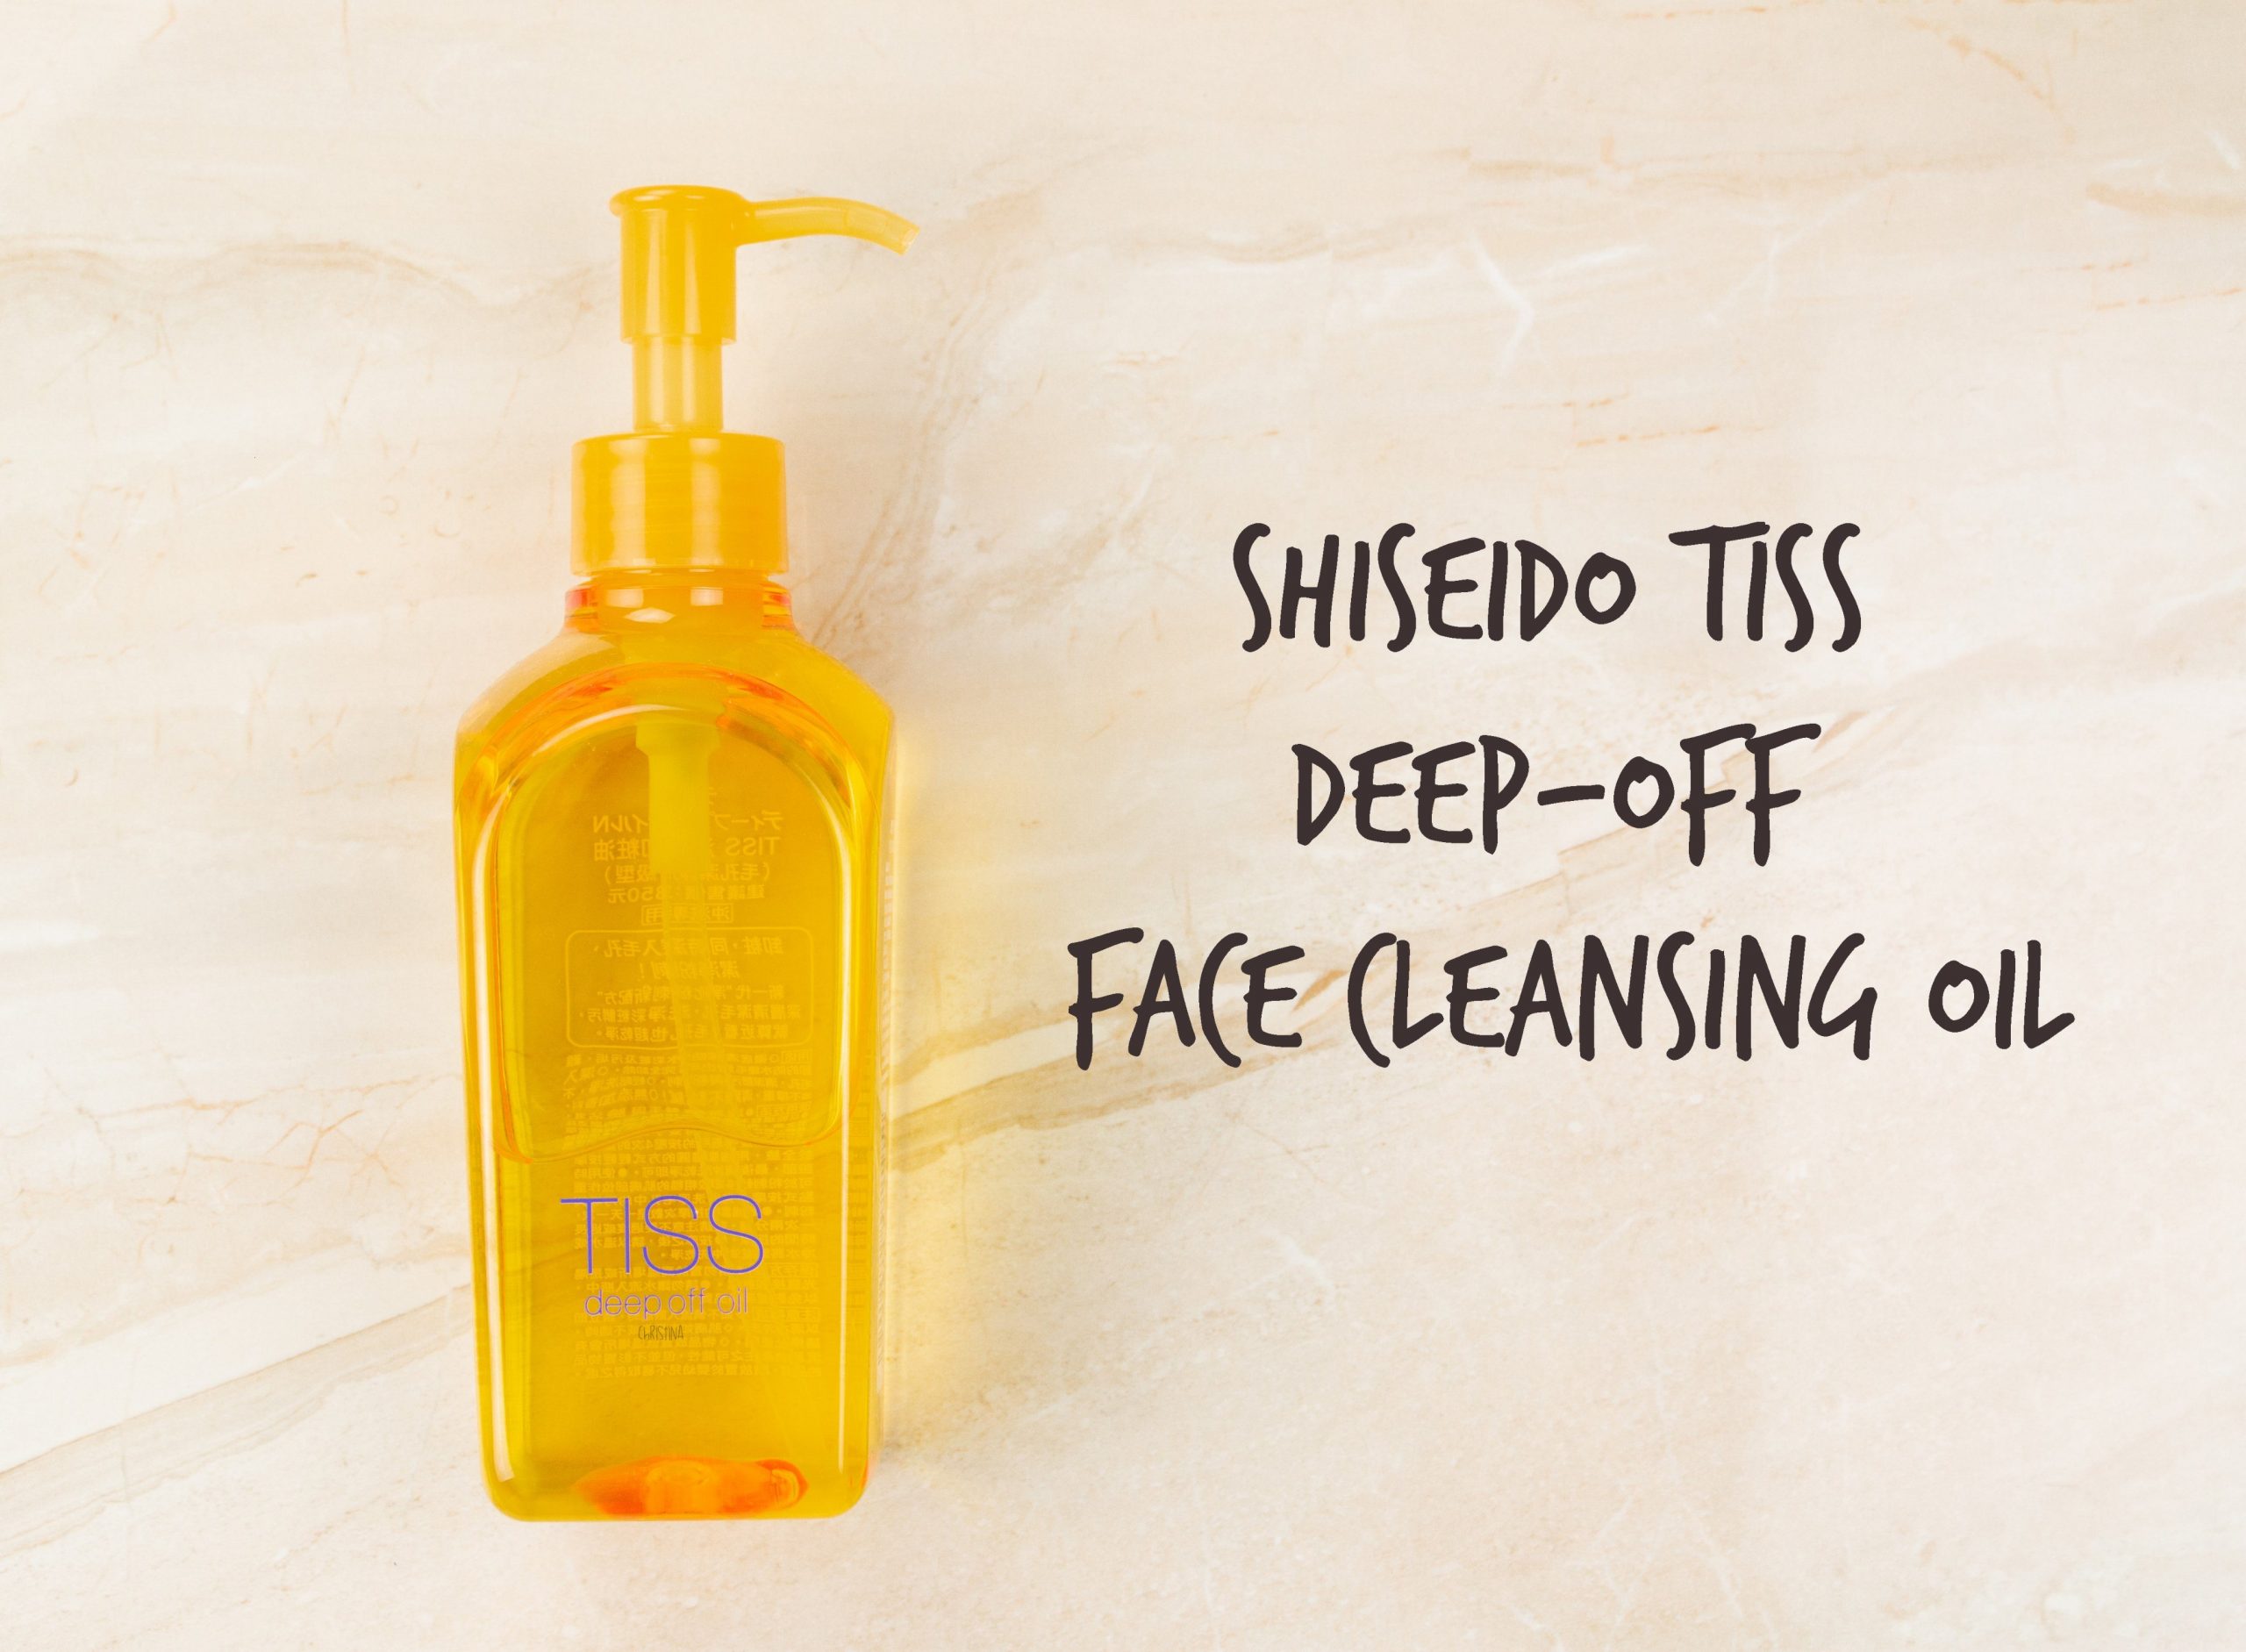 Shiseido Tiss deep off face cleansing oil for dry skin